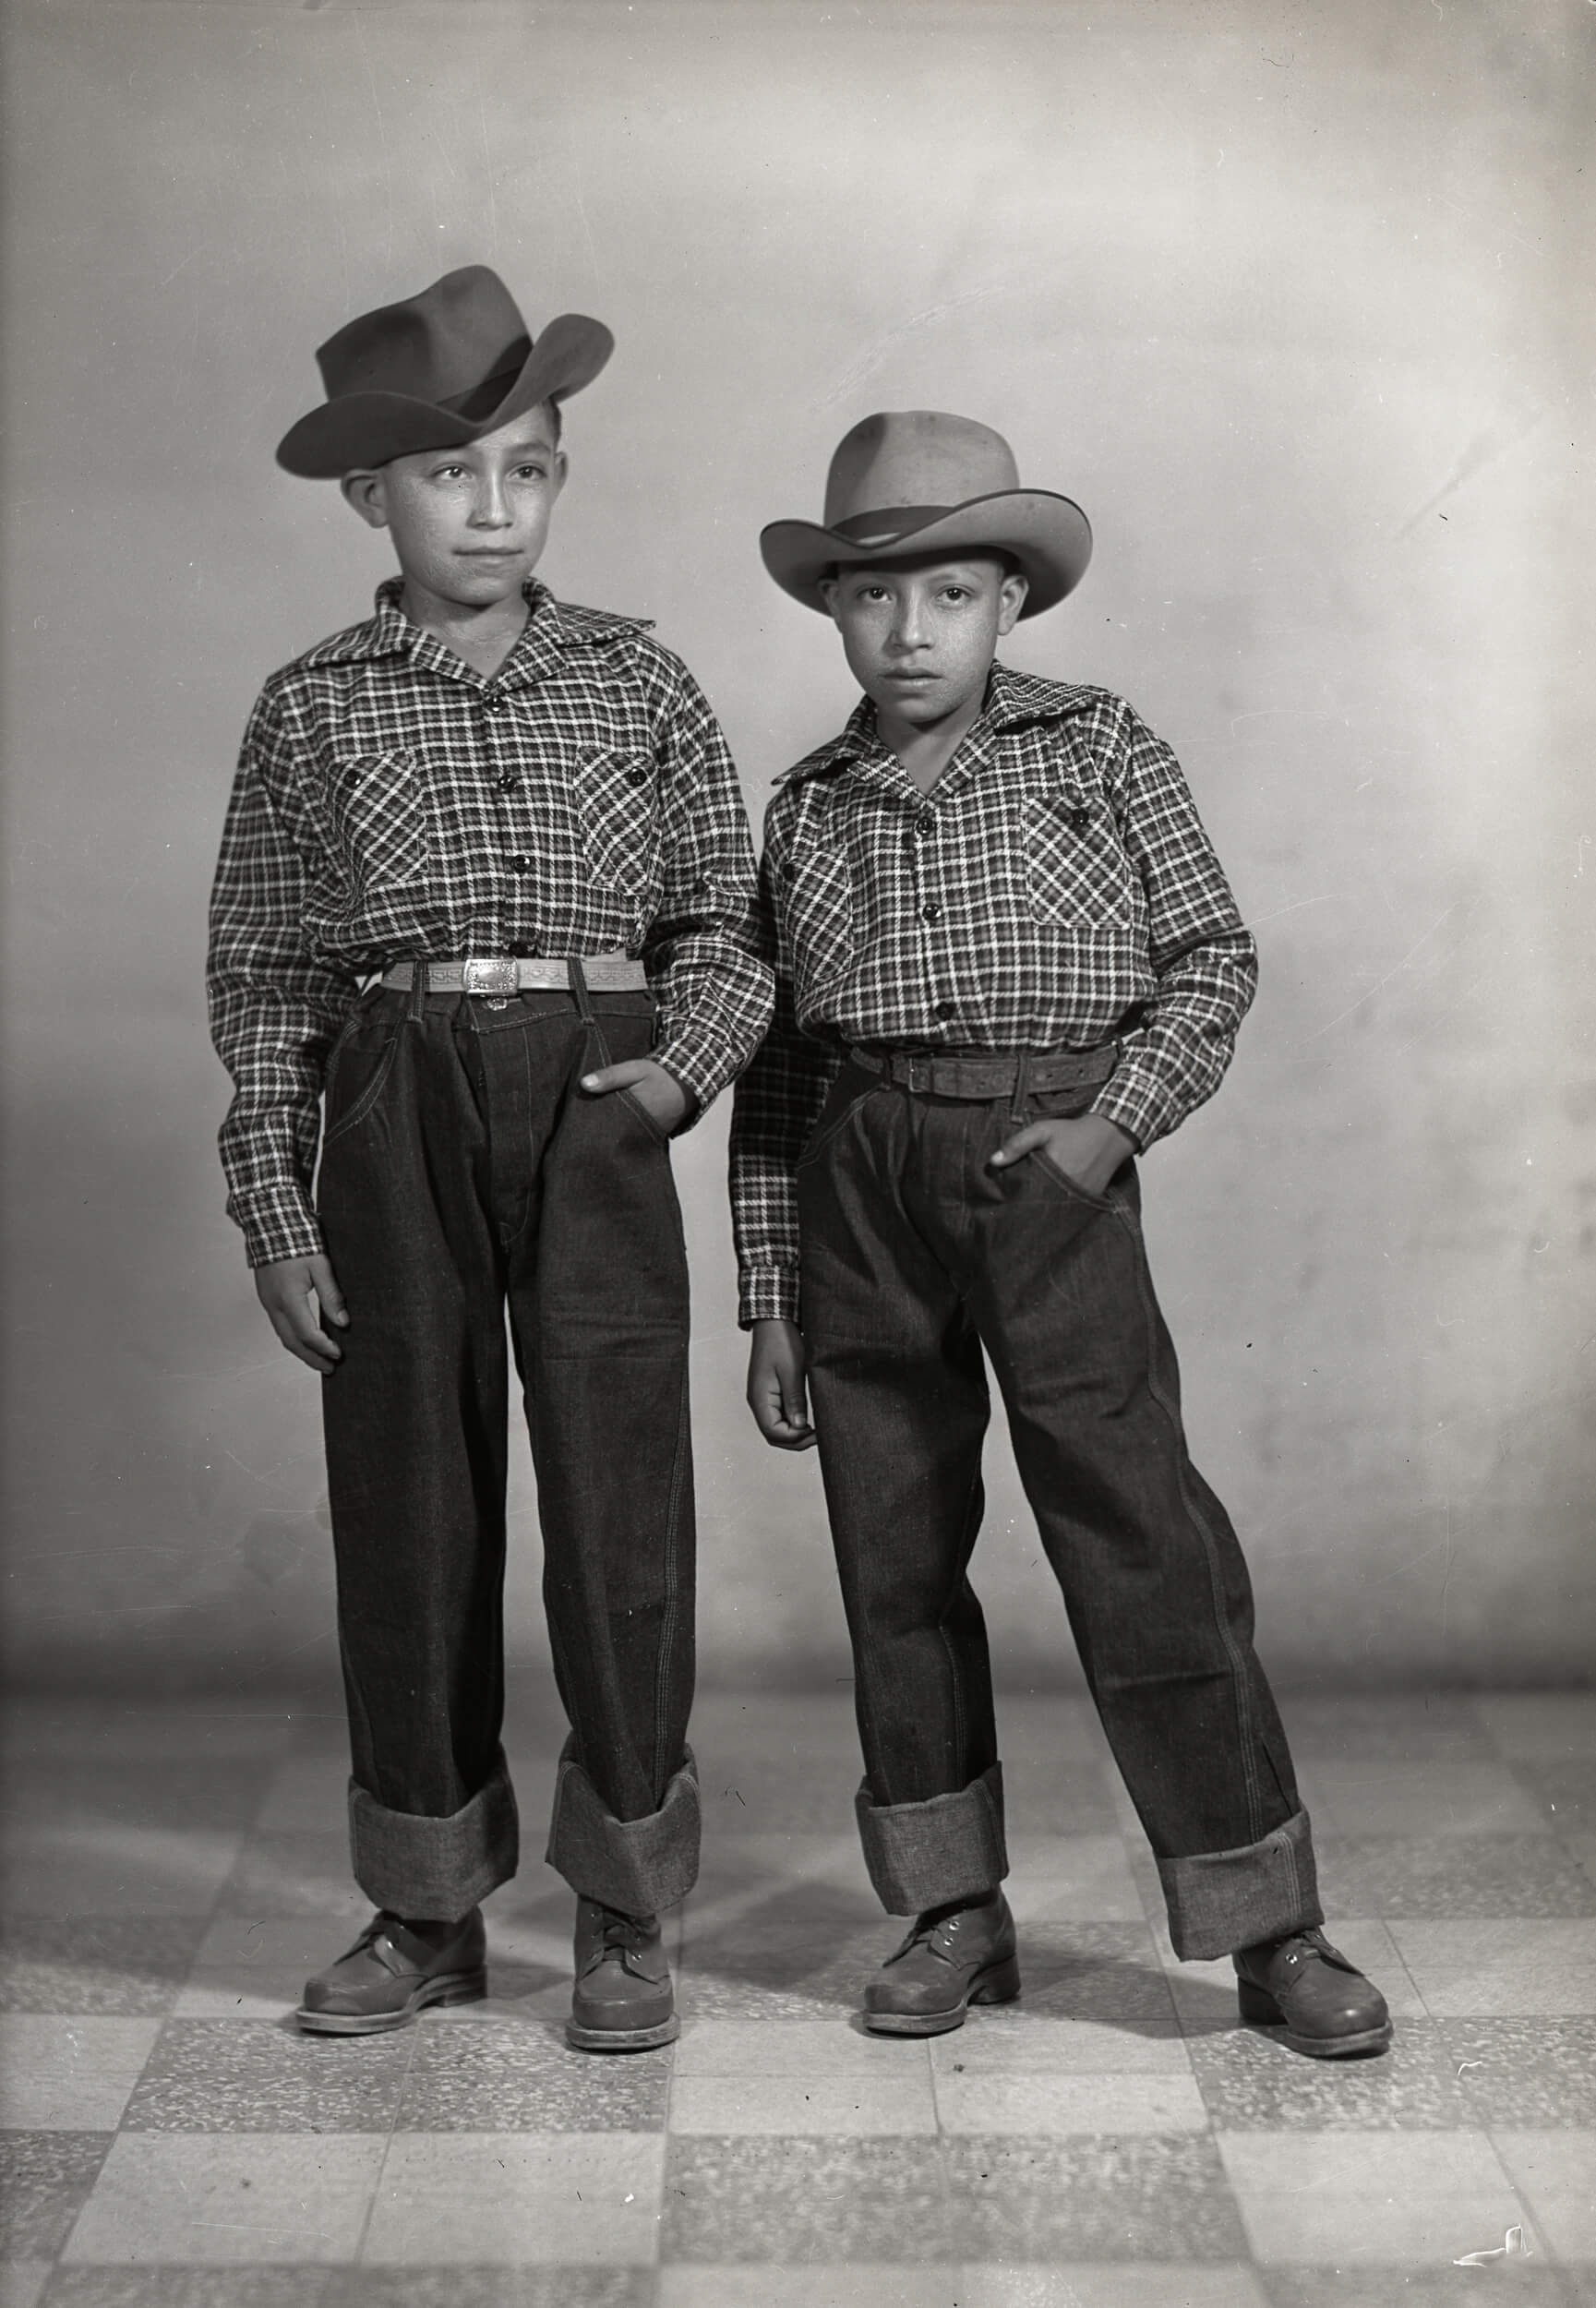 28860. Retrato de cuerpo completo de dos niños usando sombrero y ropa similar, probablemente hermanos en estudio